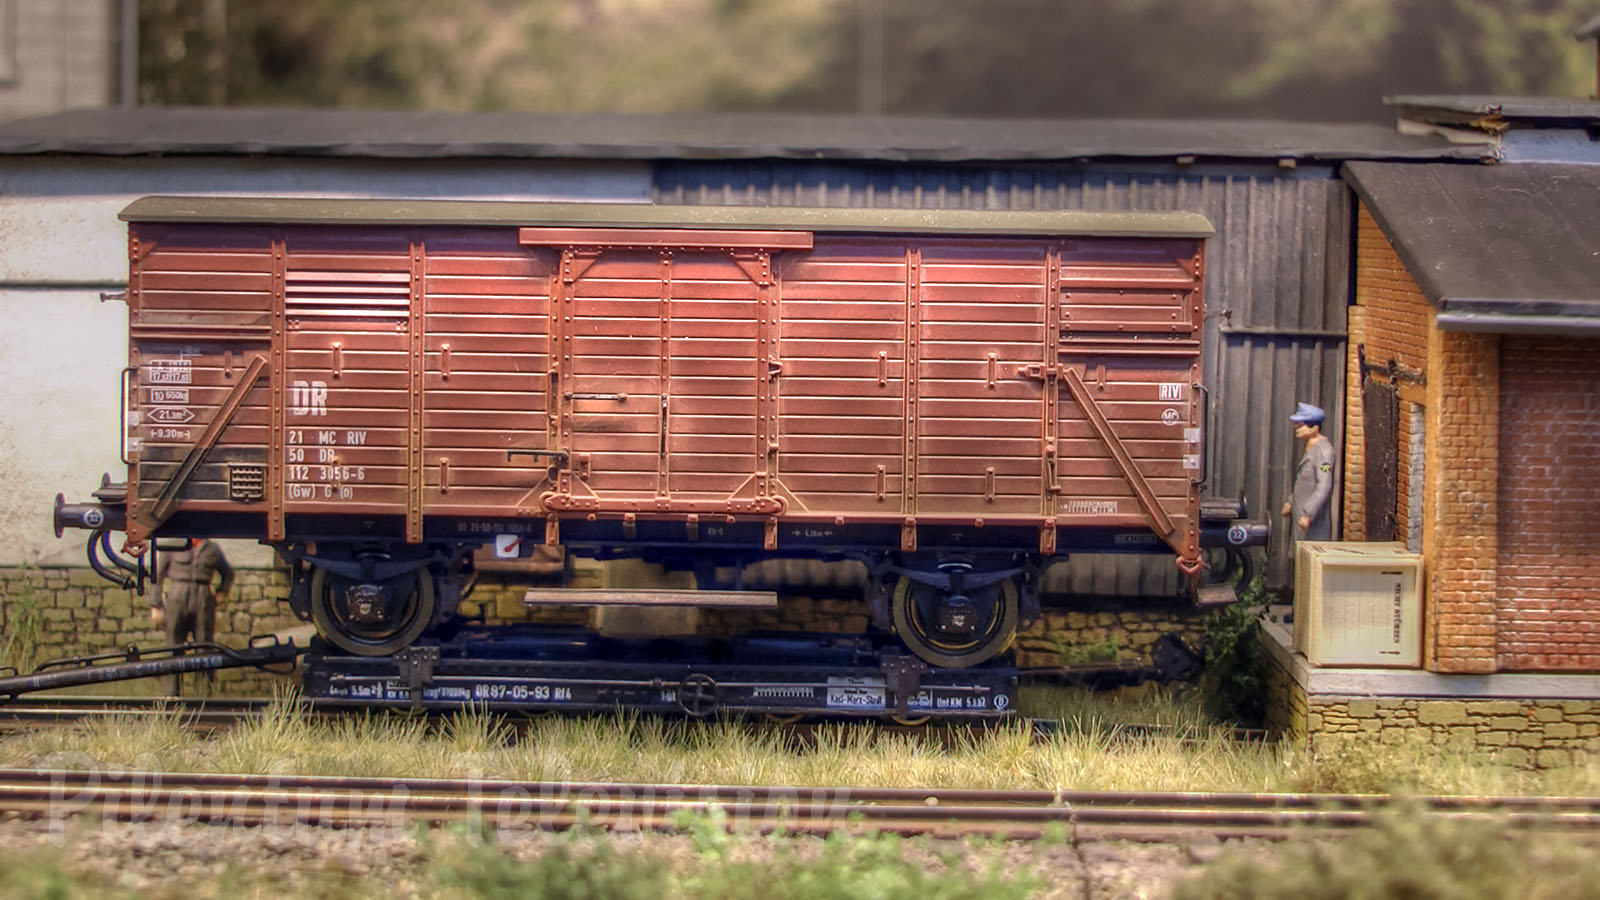 Bellissimo plastico di treno a vapore delle ferrovie sassoni a scartamento ridotto